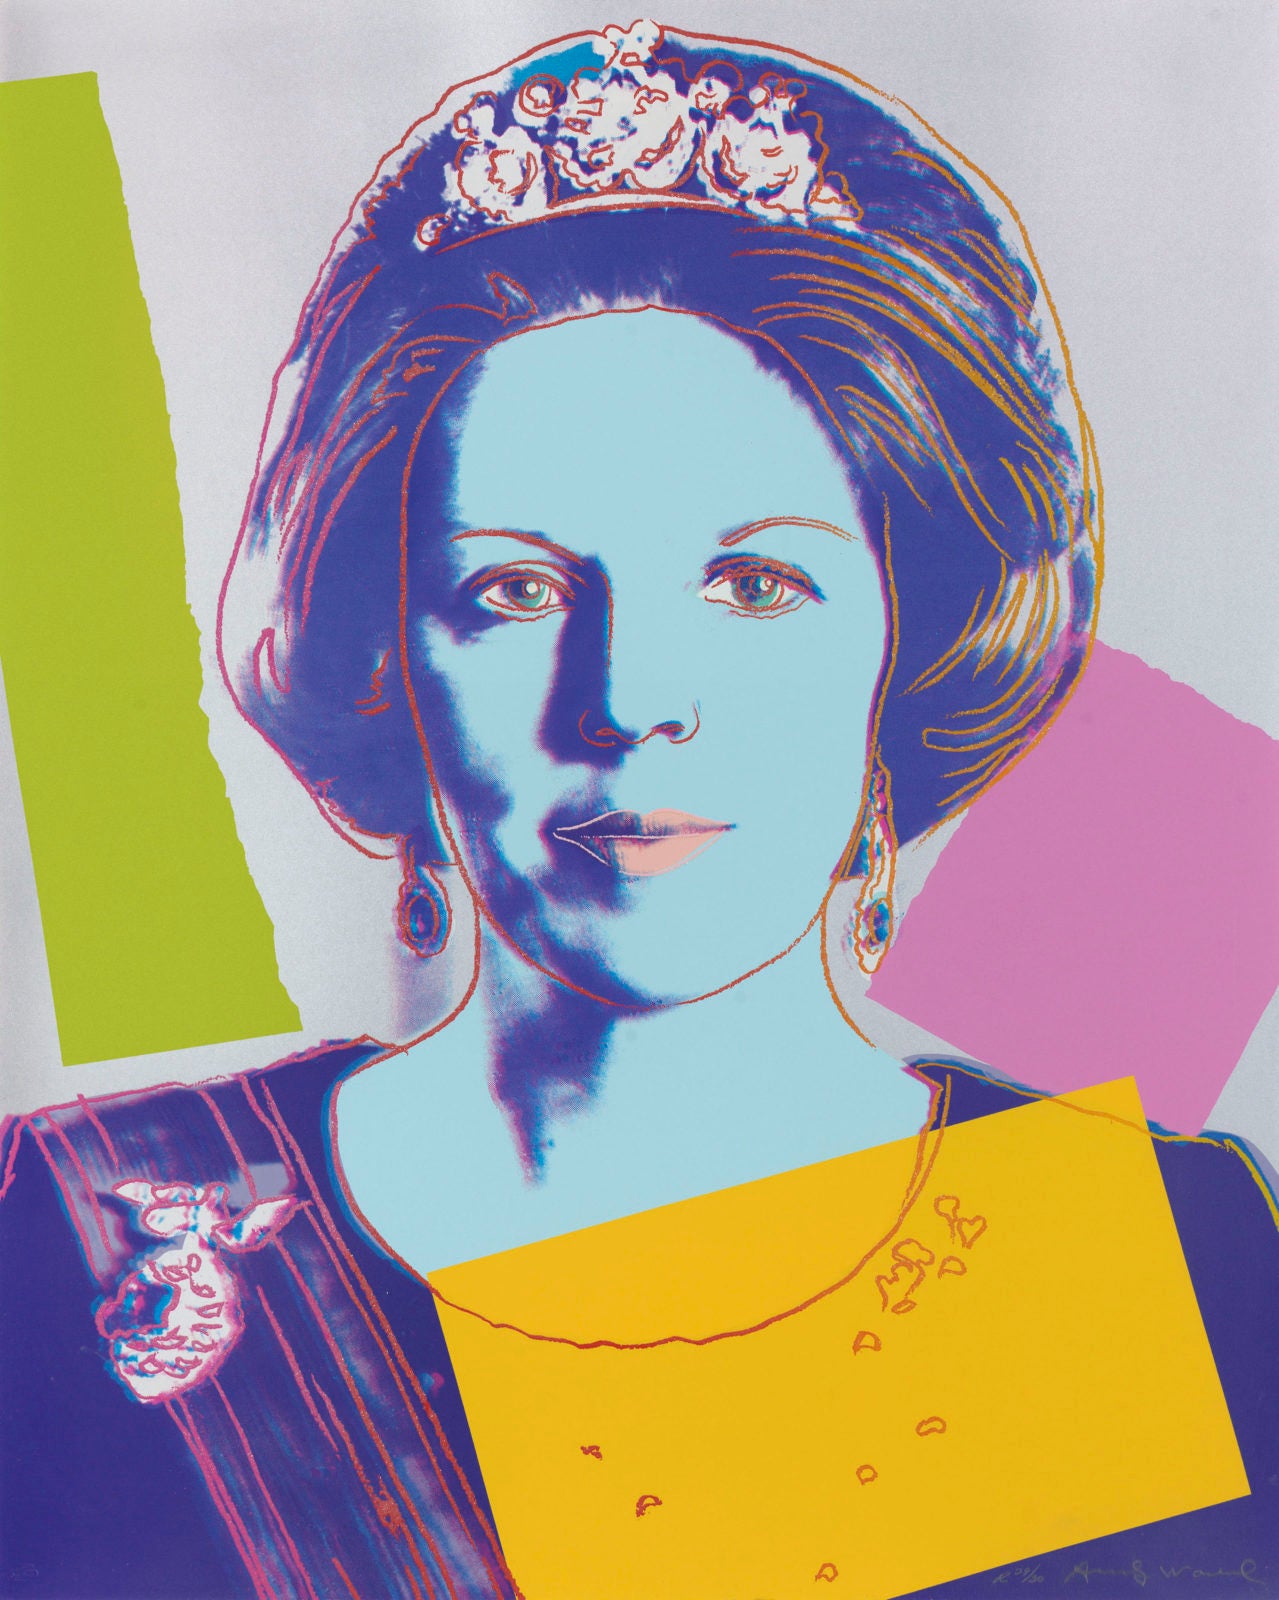 Andy Warhol - Queen Beatrix Arterego Art Gallery